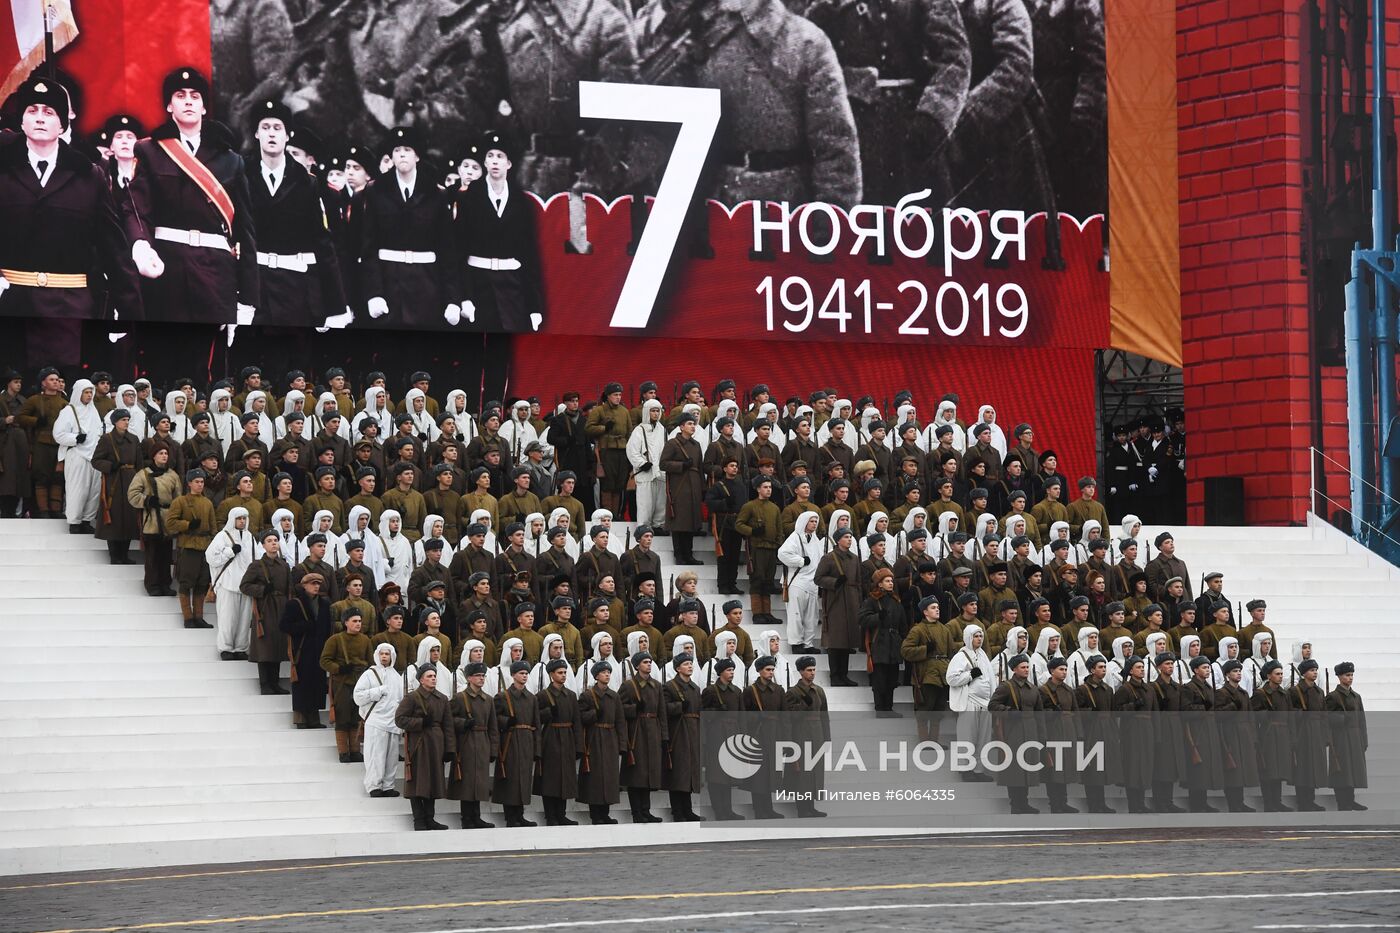 Генеральная репетиция марша, посвященного 78-й годовщине военного парада 1941 года